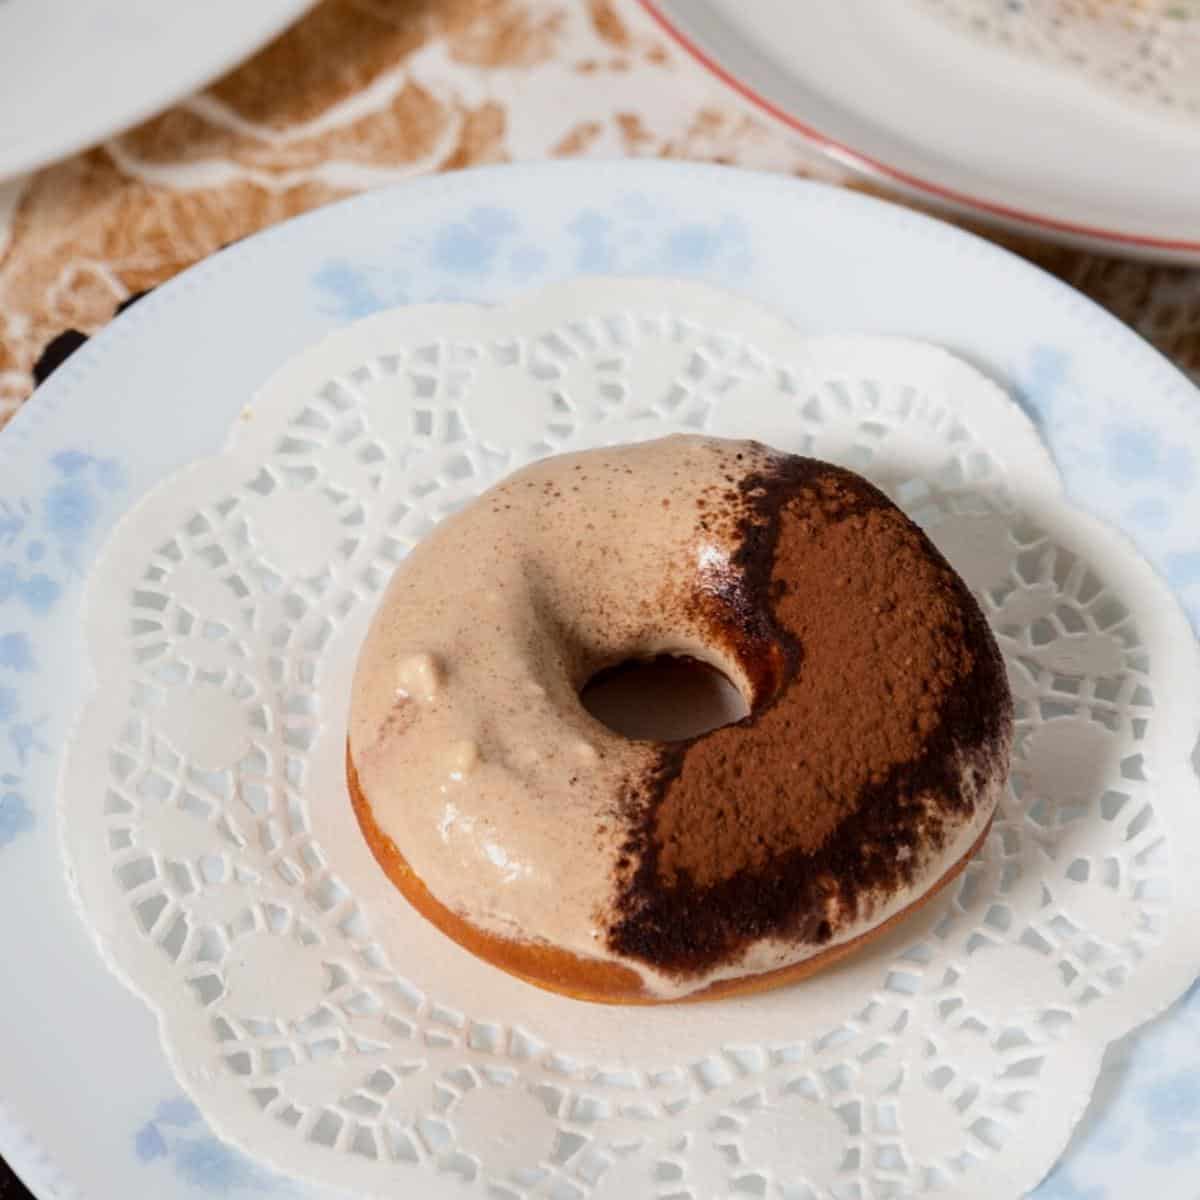 Glazed donut on a plate